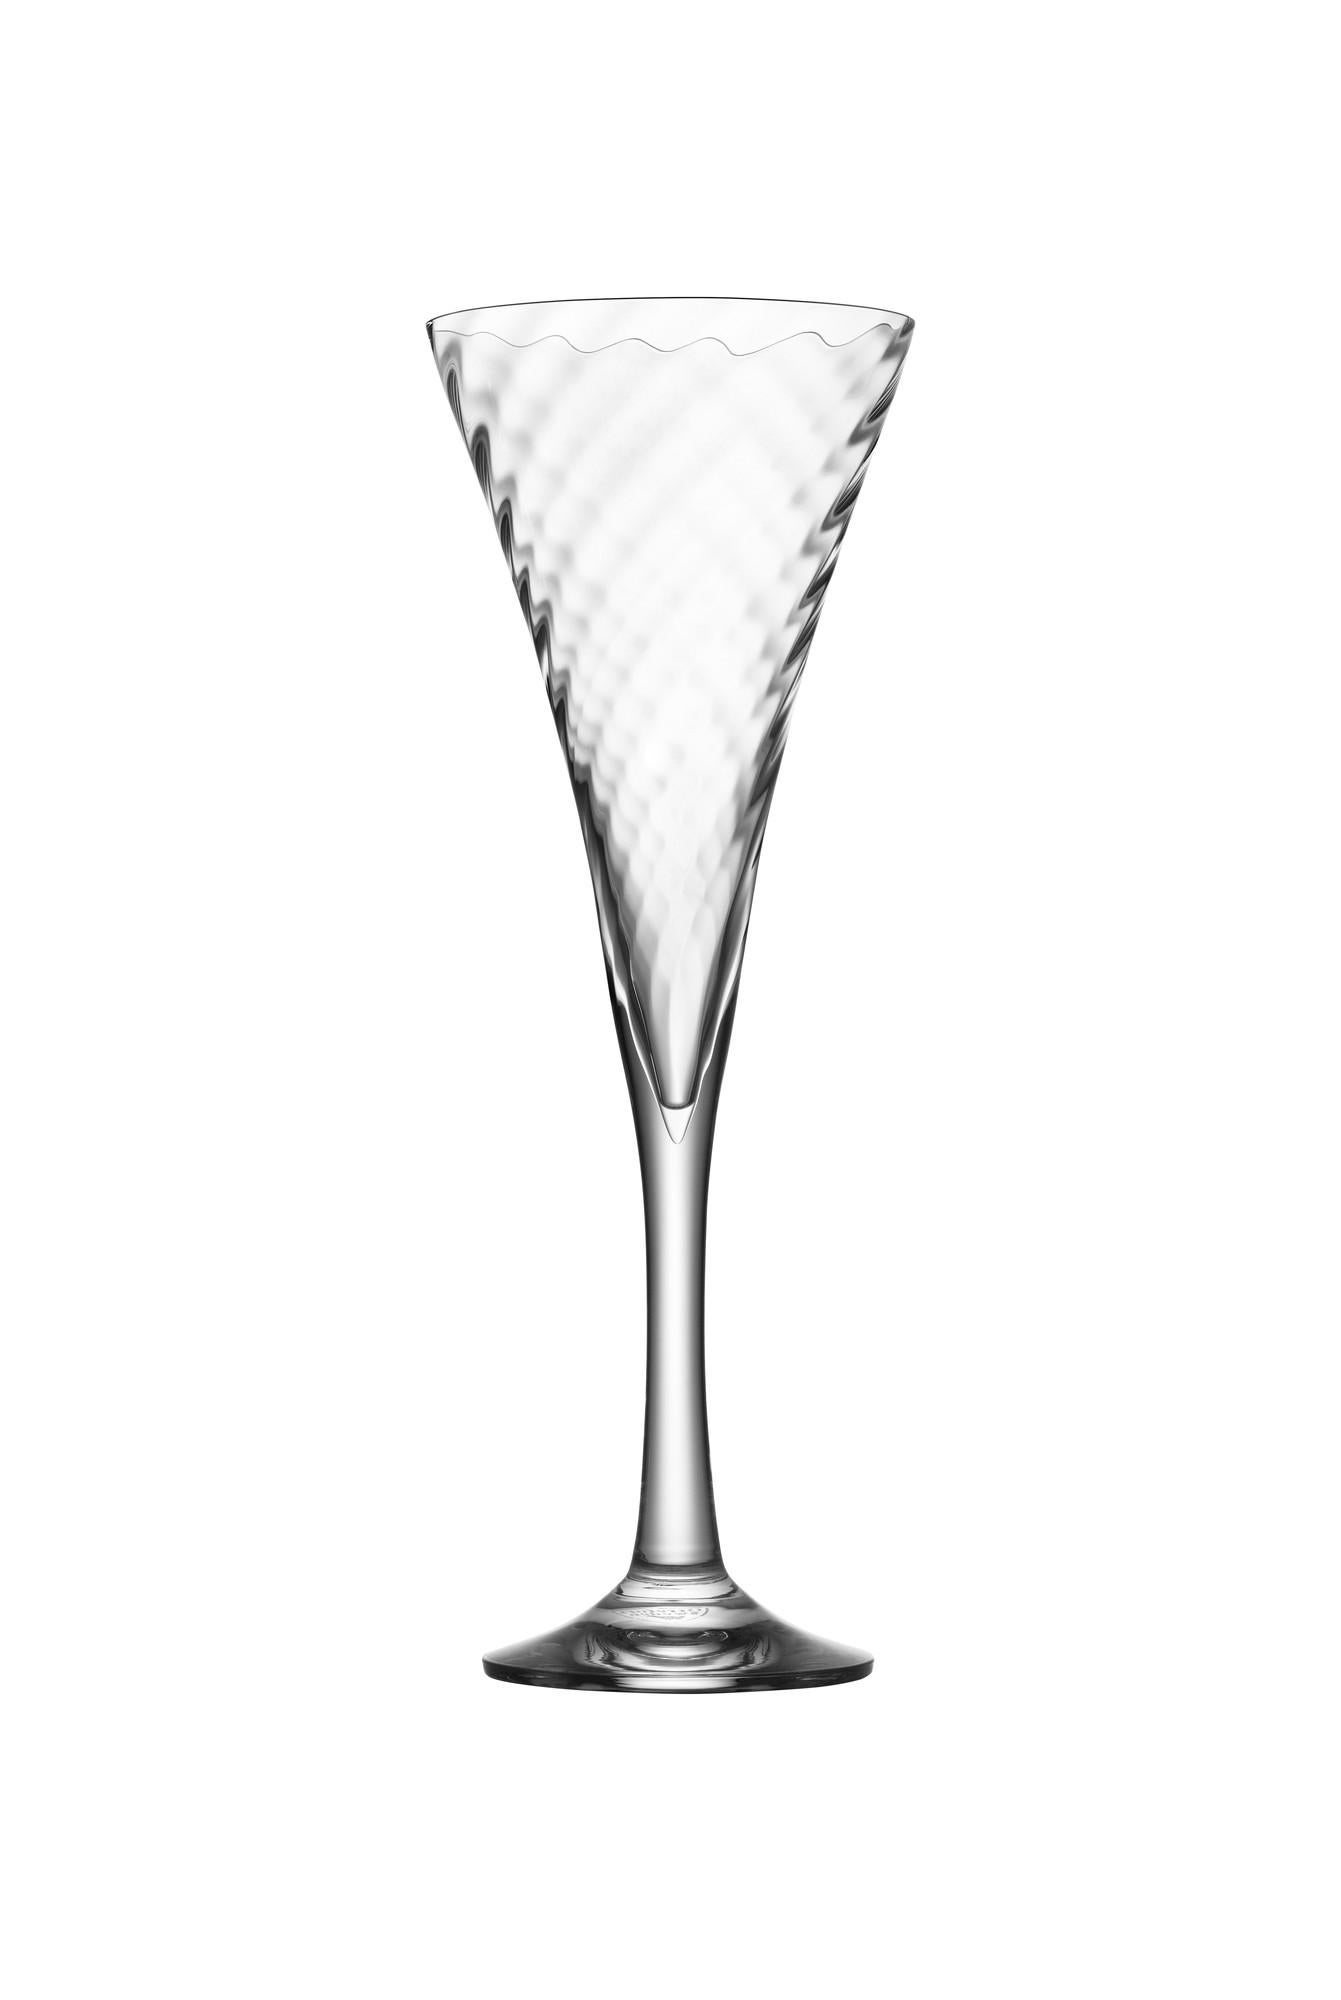 Helena Champagne fasst 8,5 oz und gehört seit 1977 zum Sortiment von Orrefors. Das Glas hat eine trompetenförmige Schale, die mit einem subtilen Motiv aus diagonalen Linien bedeckt ist, die einen schönen optischen Effekt im Kristall erzeugen.